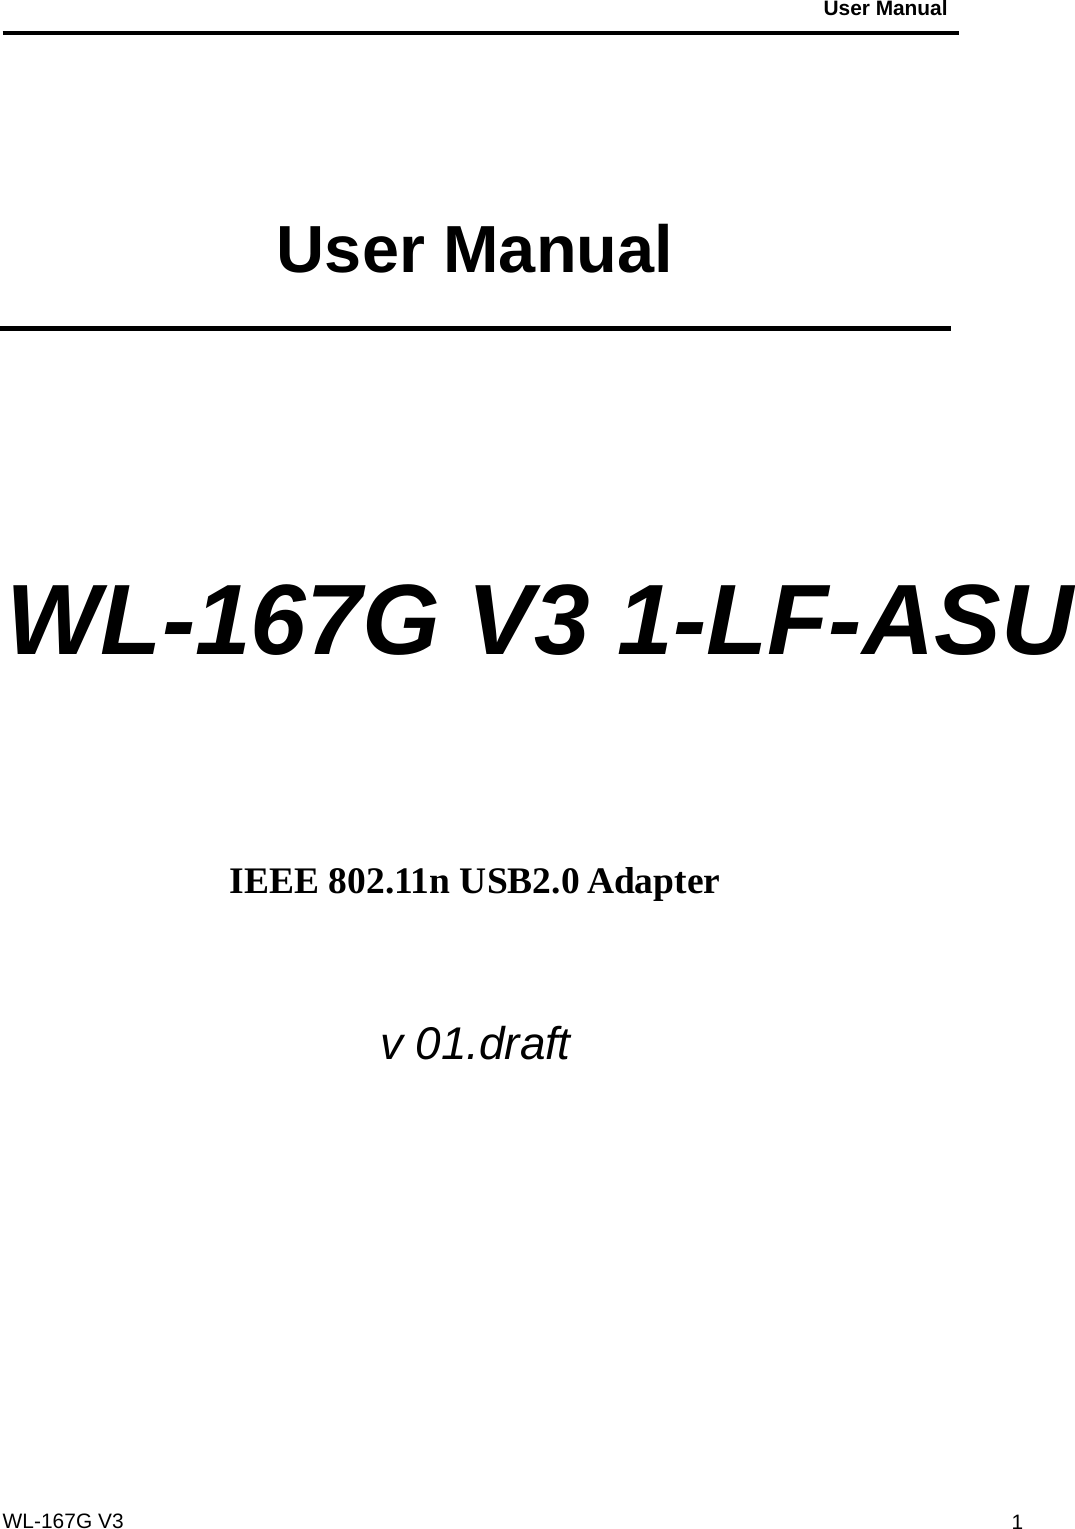                                           User Manual                                              WL-167G V3 1 User Manual   WL-167G V3 1-LF-ASU     IEEE 802.11n USB2.0 Adapter  v 01.draft    